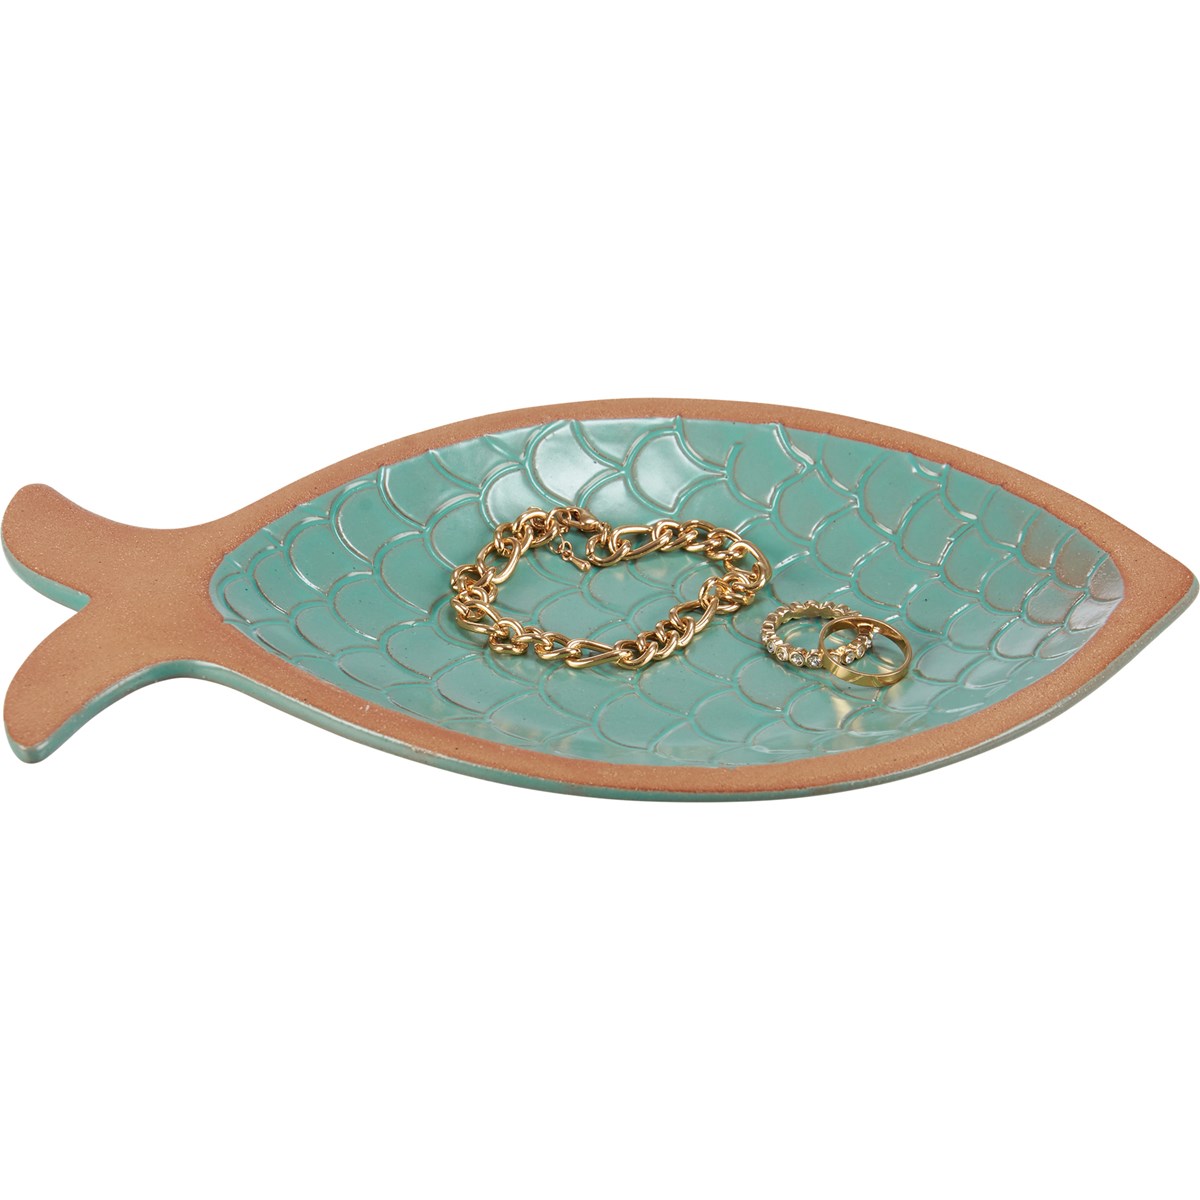 Fish Tray - Stoneware